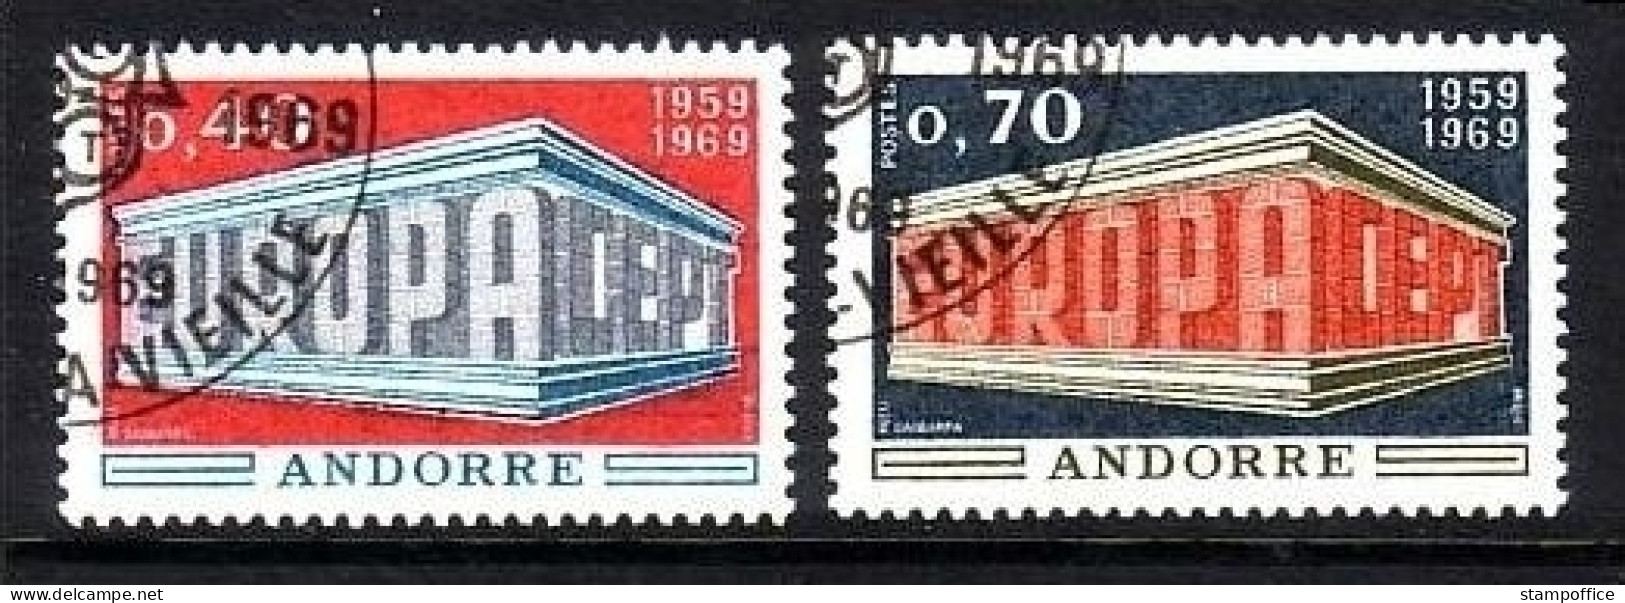 FRANZÖSISCH ANDORRA MI-NR. 214-215 GESTEMPELT(USED) EUROPA 1969 - 1969